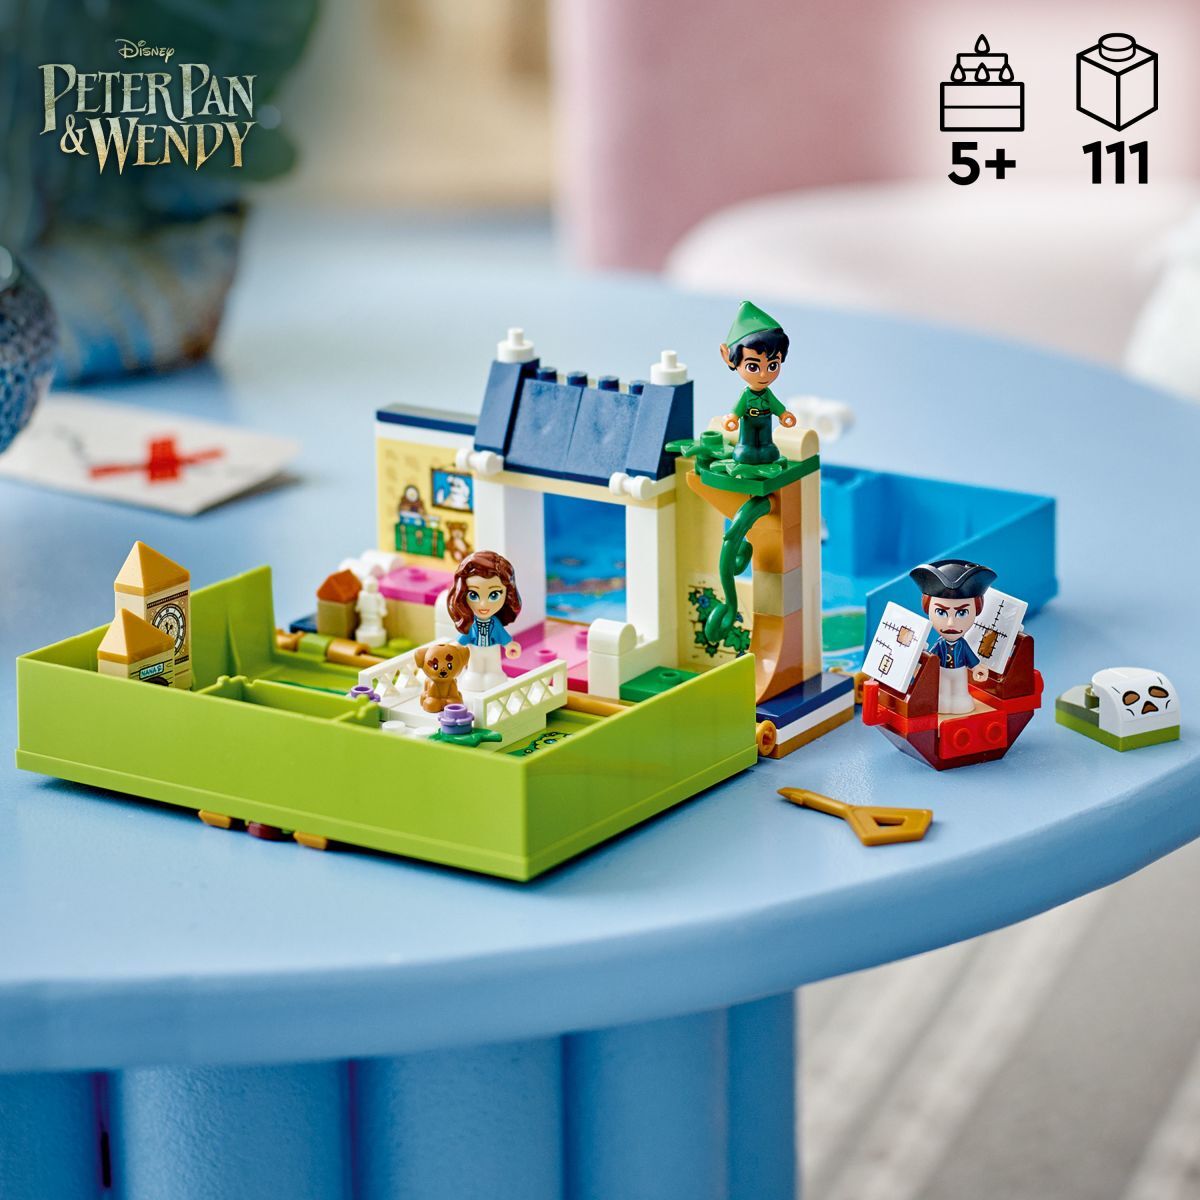 LEGO Disney 100 43220 Peter Pan & Wendy's Storybook Adventures